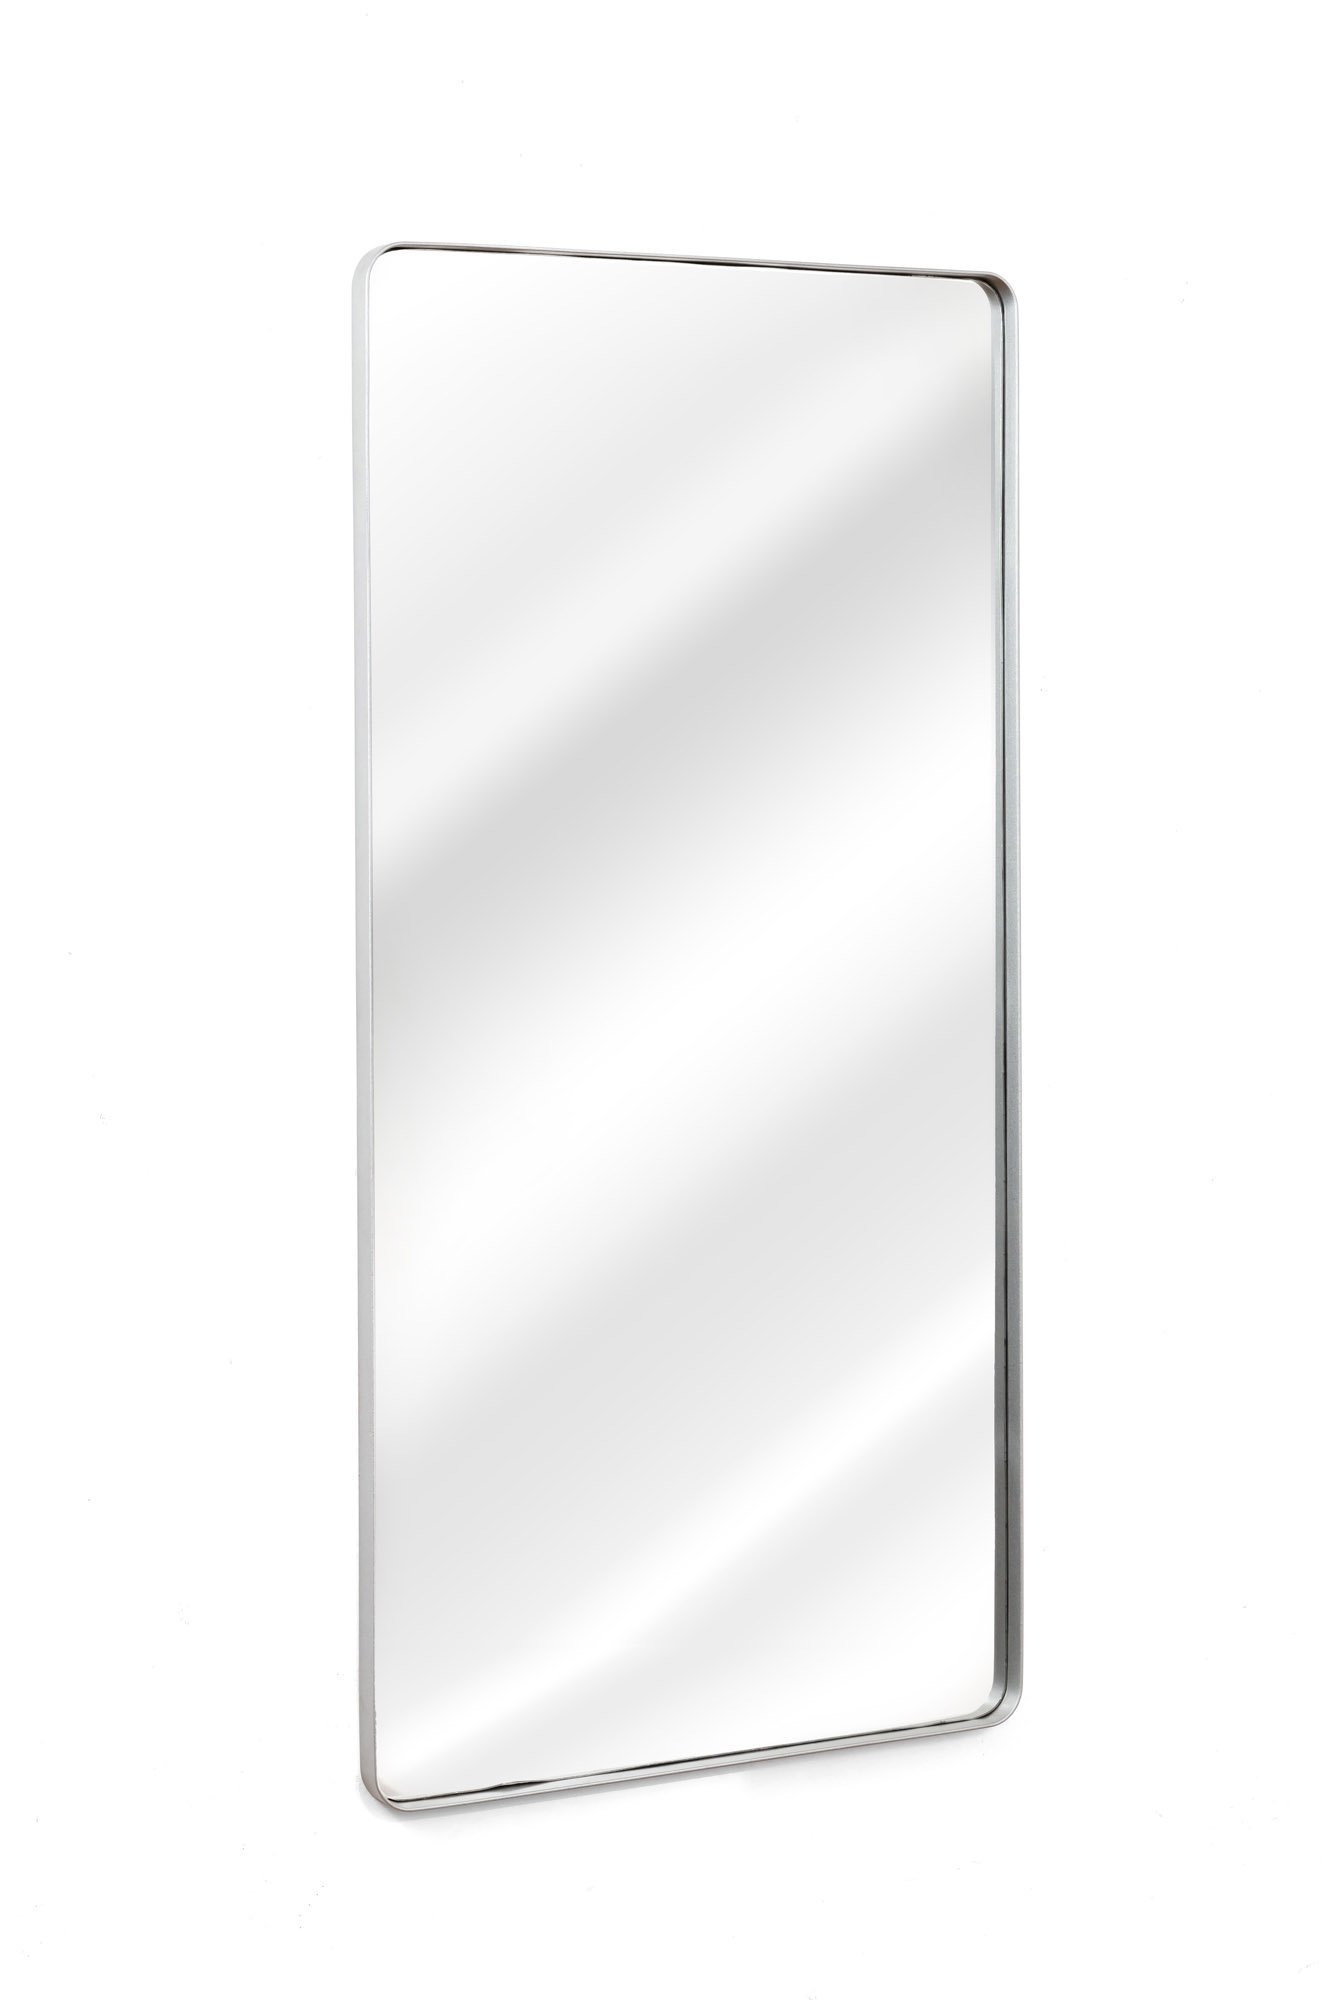 Espelho Corpo Inteiro Retangular Grande Com Moldura Em Metal Industrial 120 x 60 Cm Prata - 2